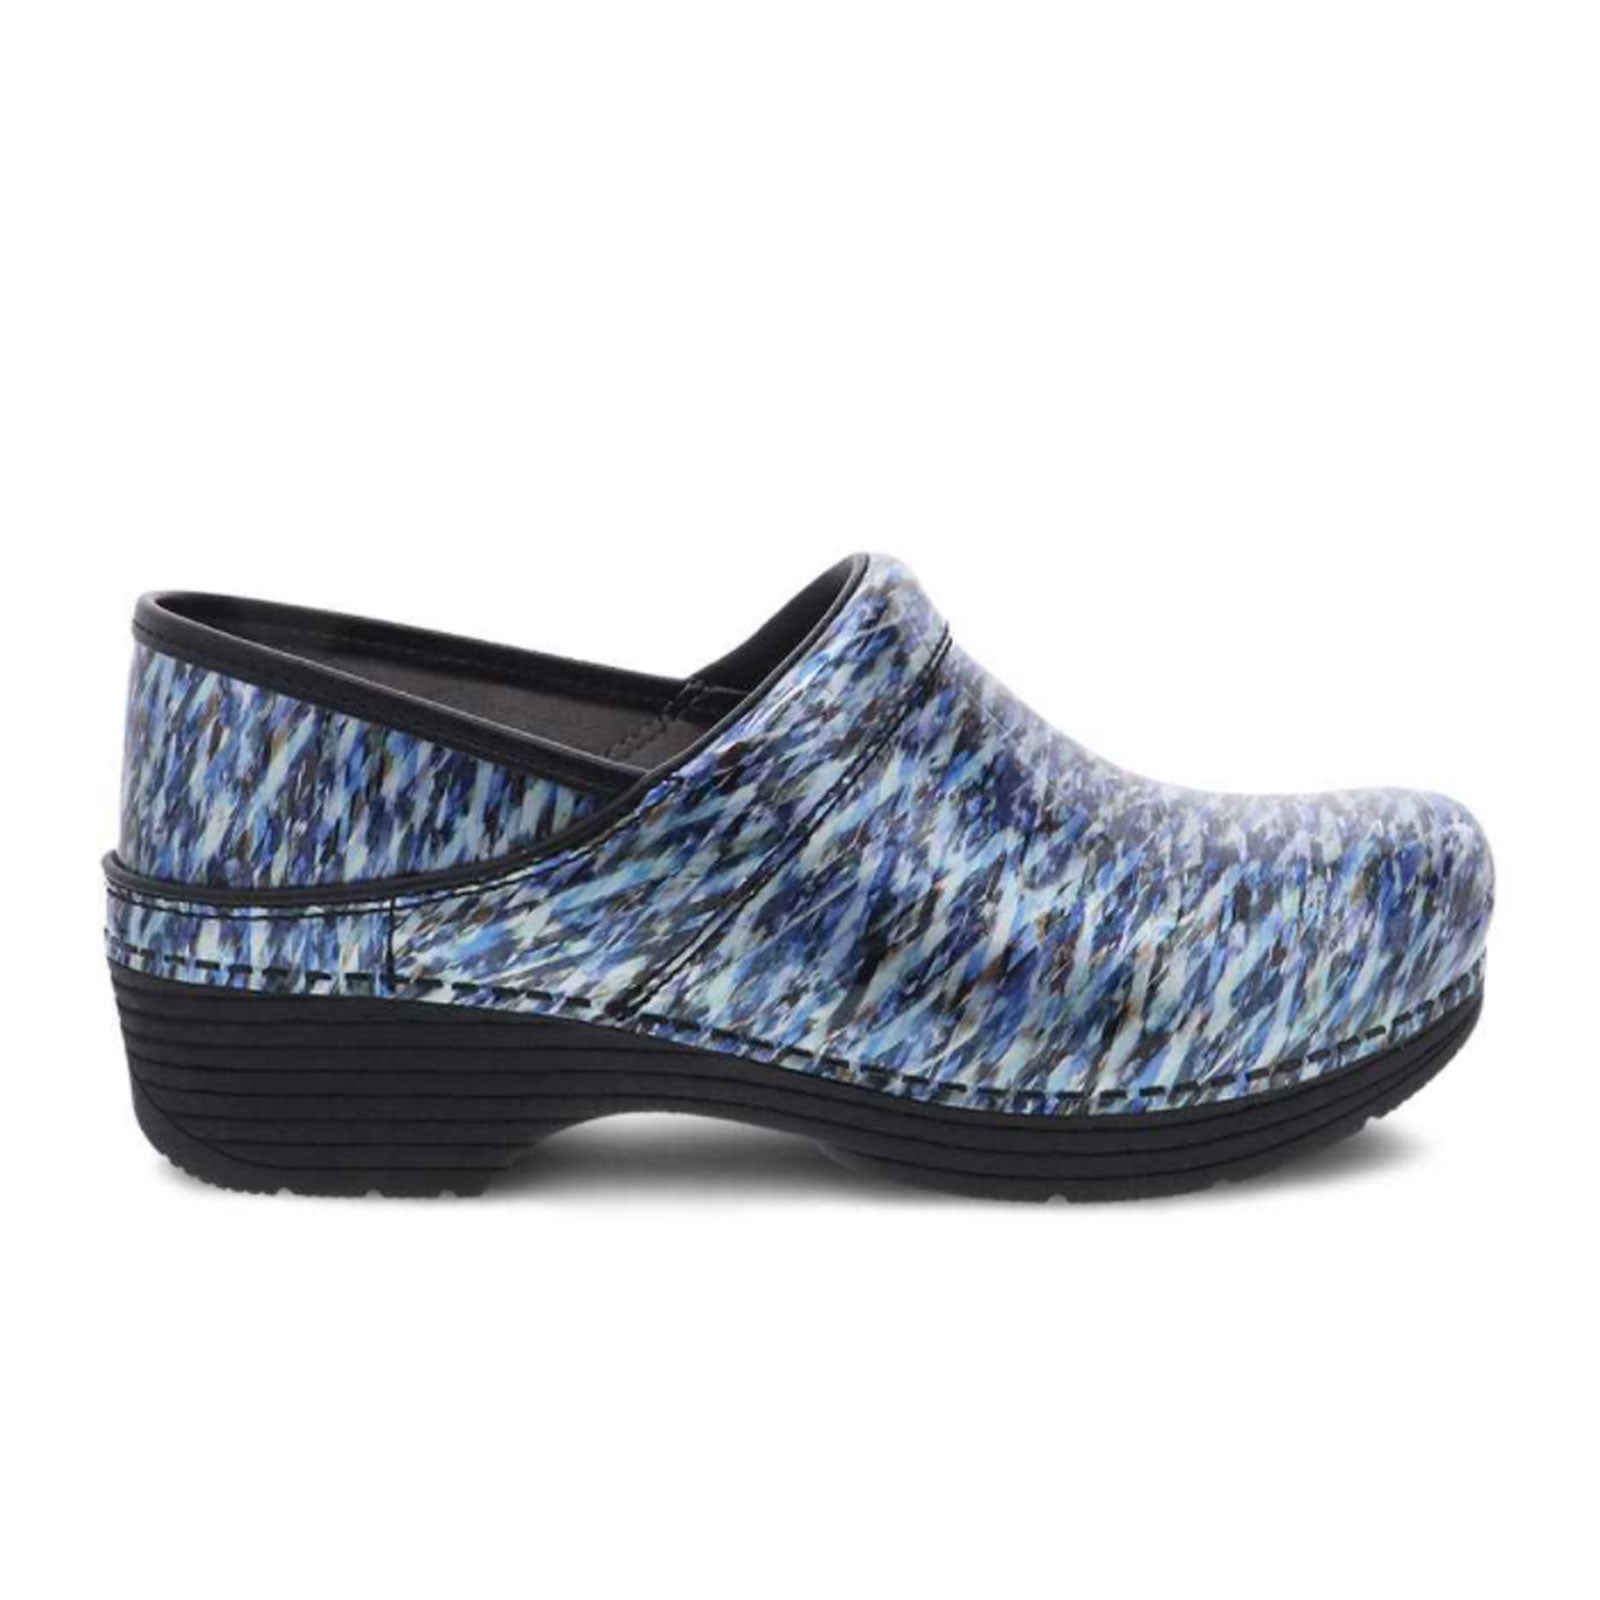 Dansko LT Pro Clog (Women) - Blue Waves Patent – The Heel Shoe Fitters